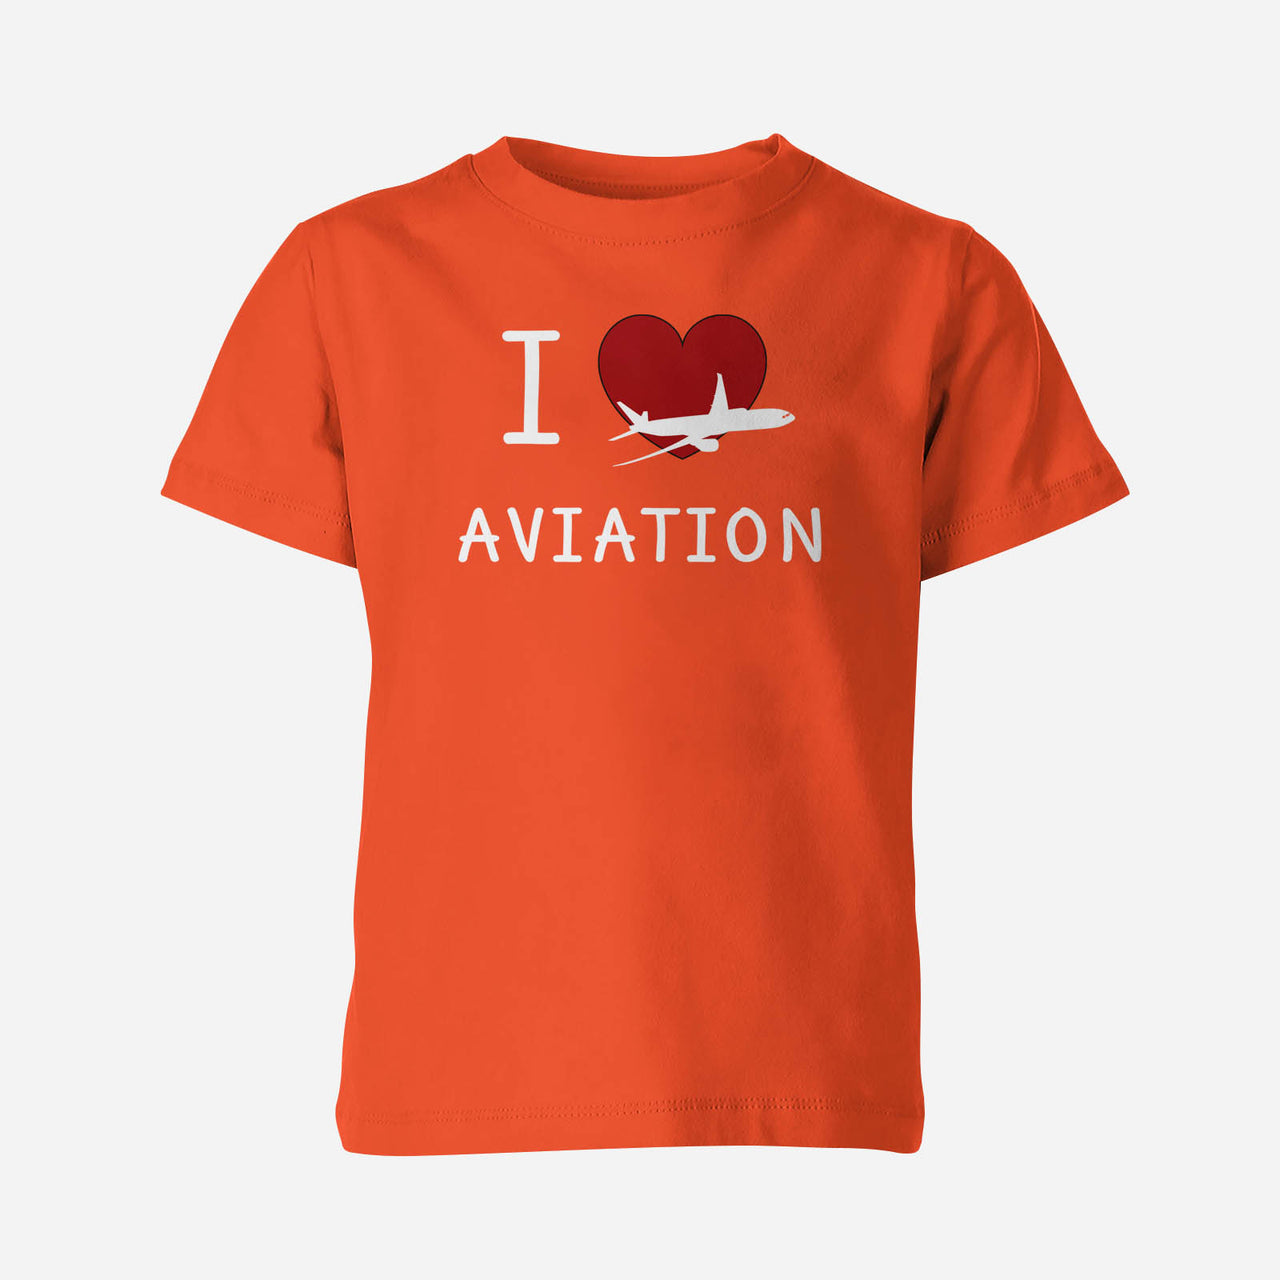 I Love Aviation Designed Children T-Shirts